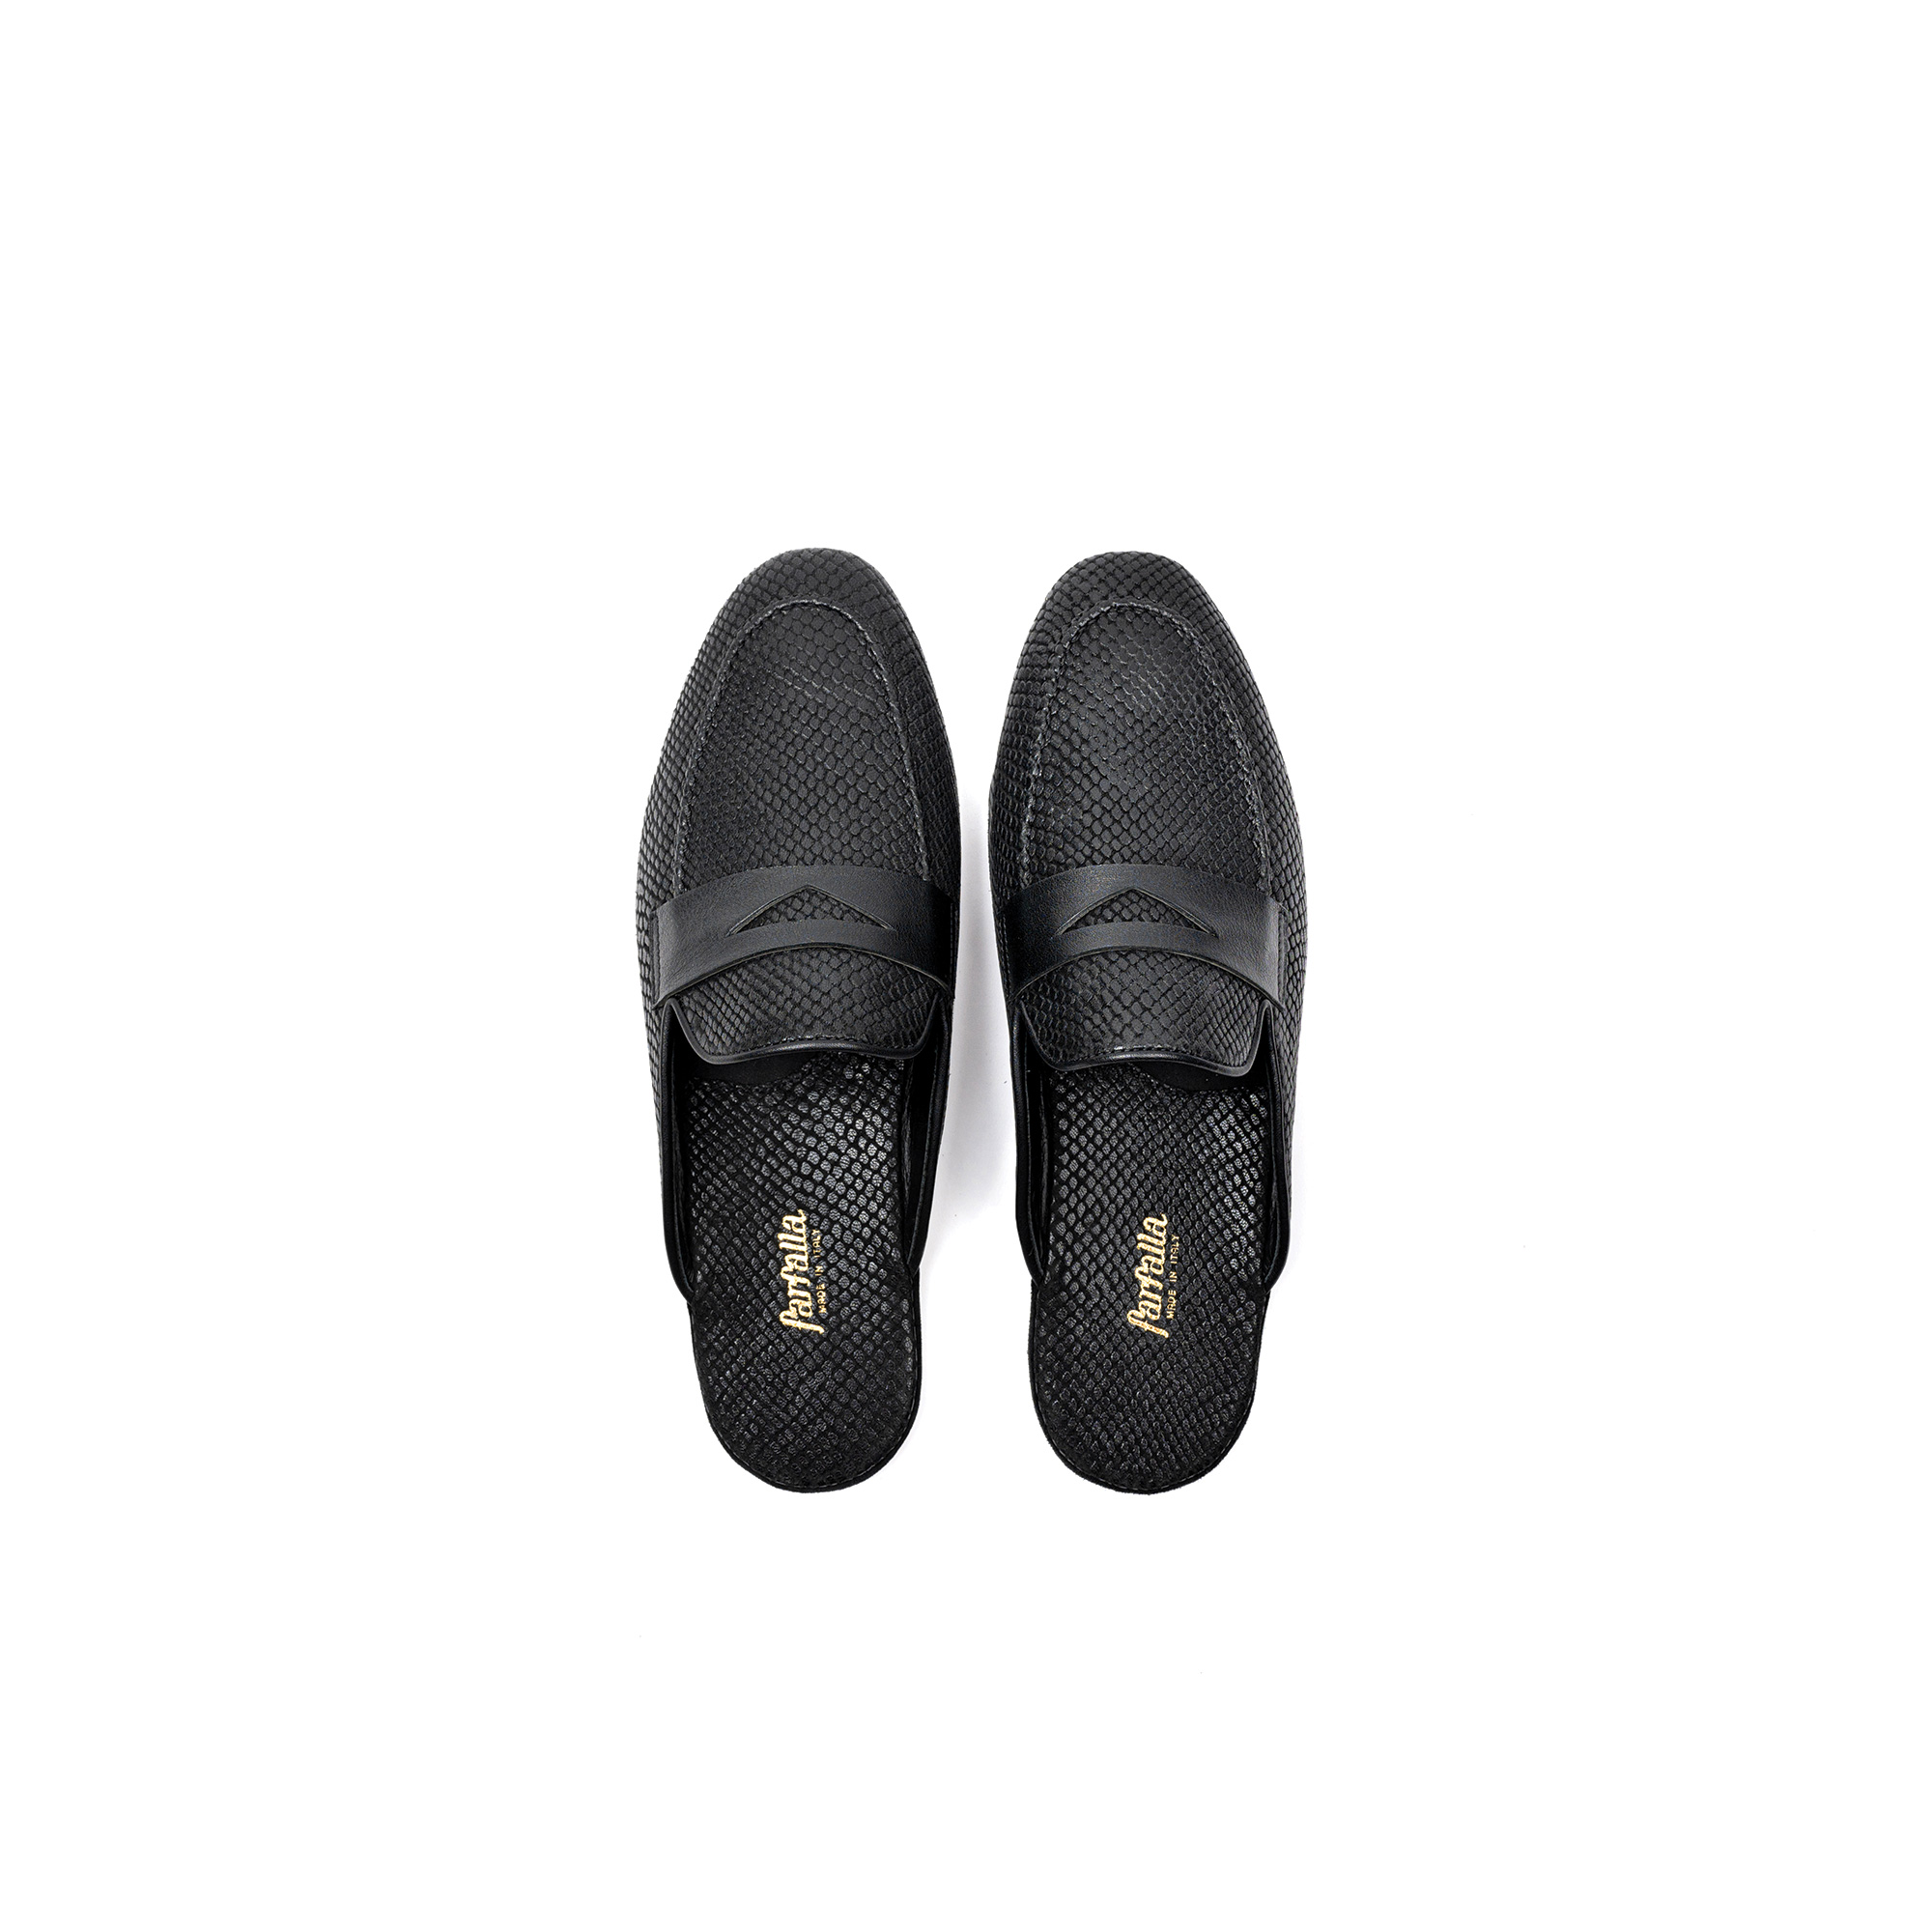 Pantofola interno lusso in pelle stampato exotic nero - Farfalla italian slippers